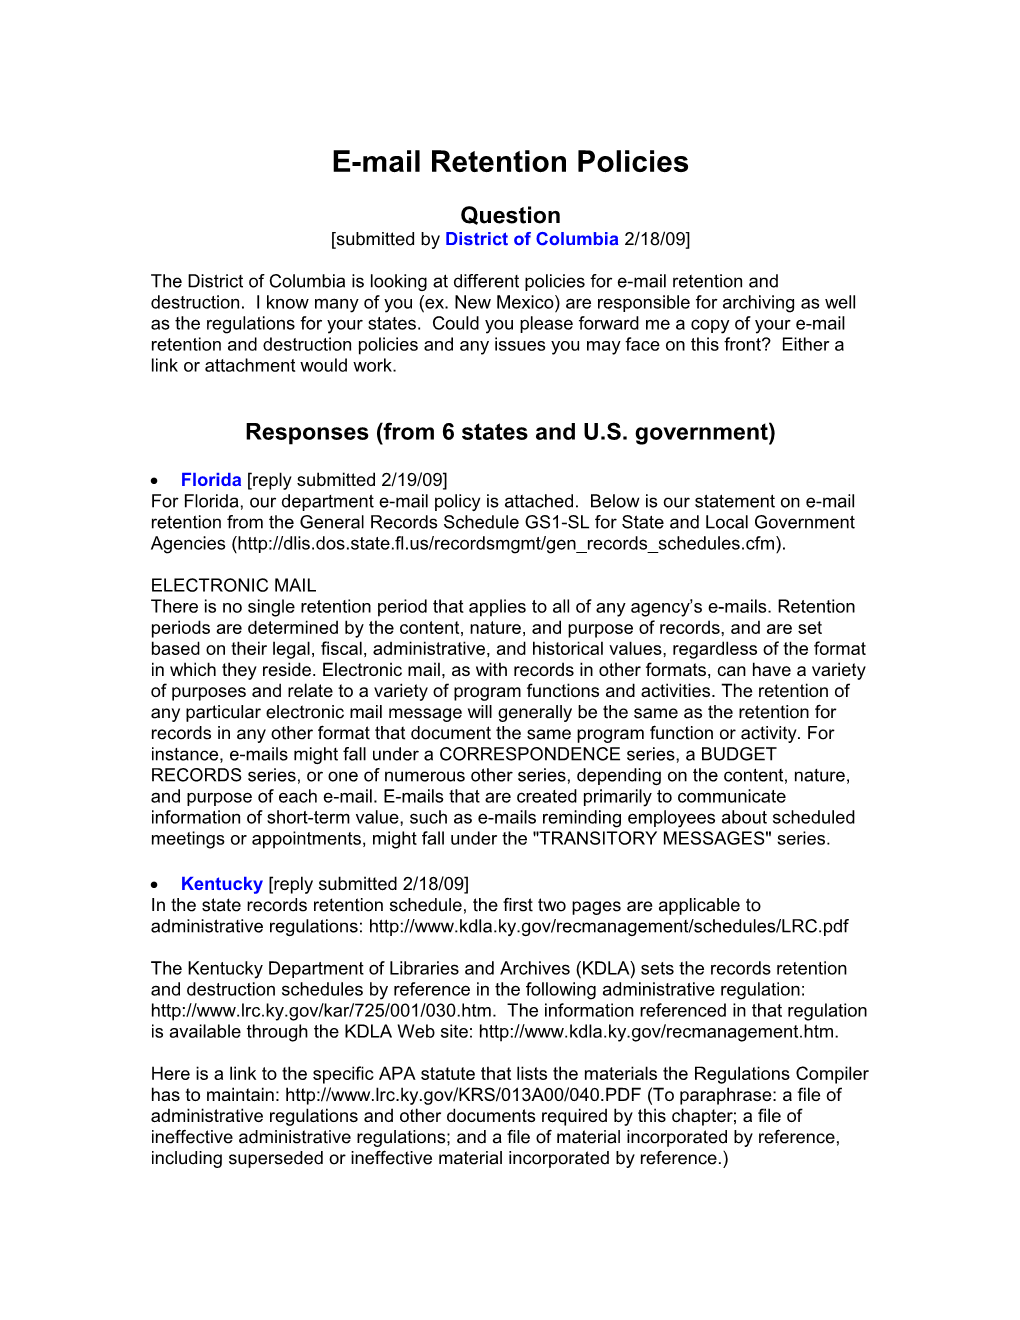 E-Mail Retention Policies